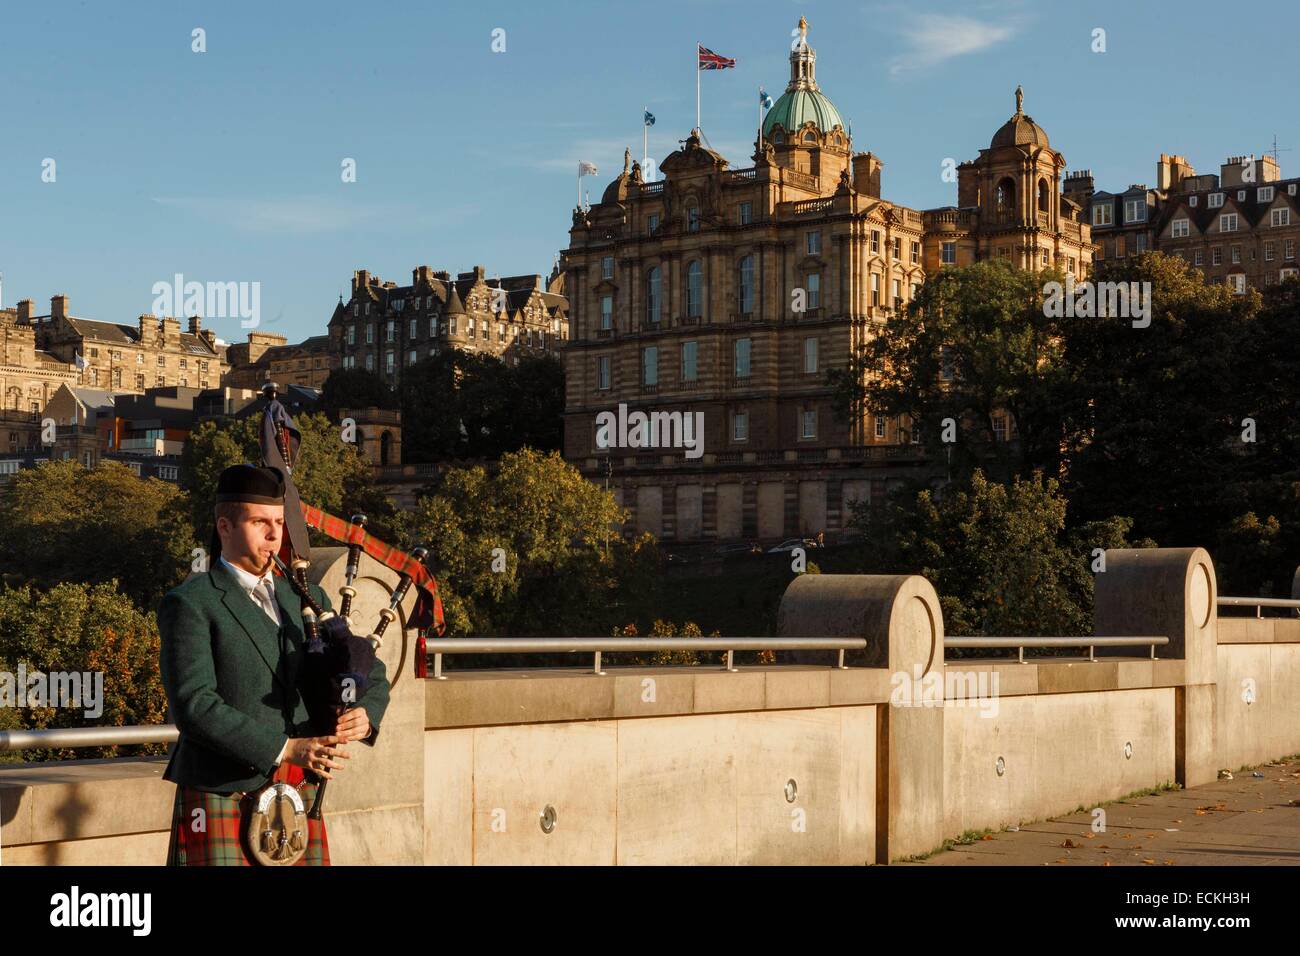 Princes Street Ostgarten, Dudelsackspieler in schottischer Tracht vor der Altstadt von Edinburgh gekleidet, Edinburg, Schottland, Vereinigtes Königreich Stockfoto